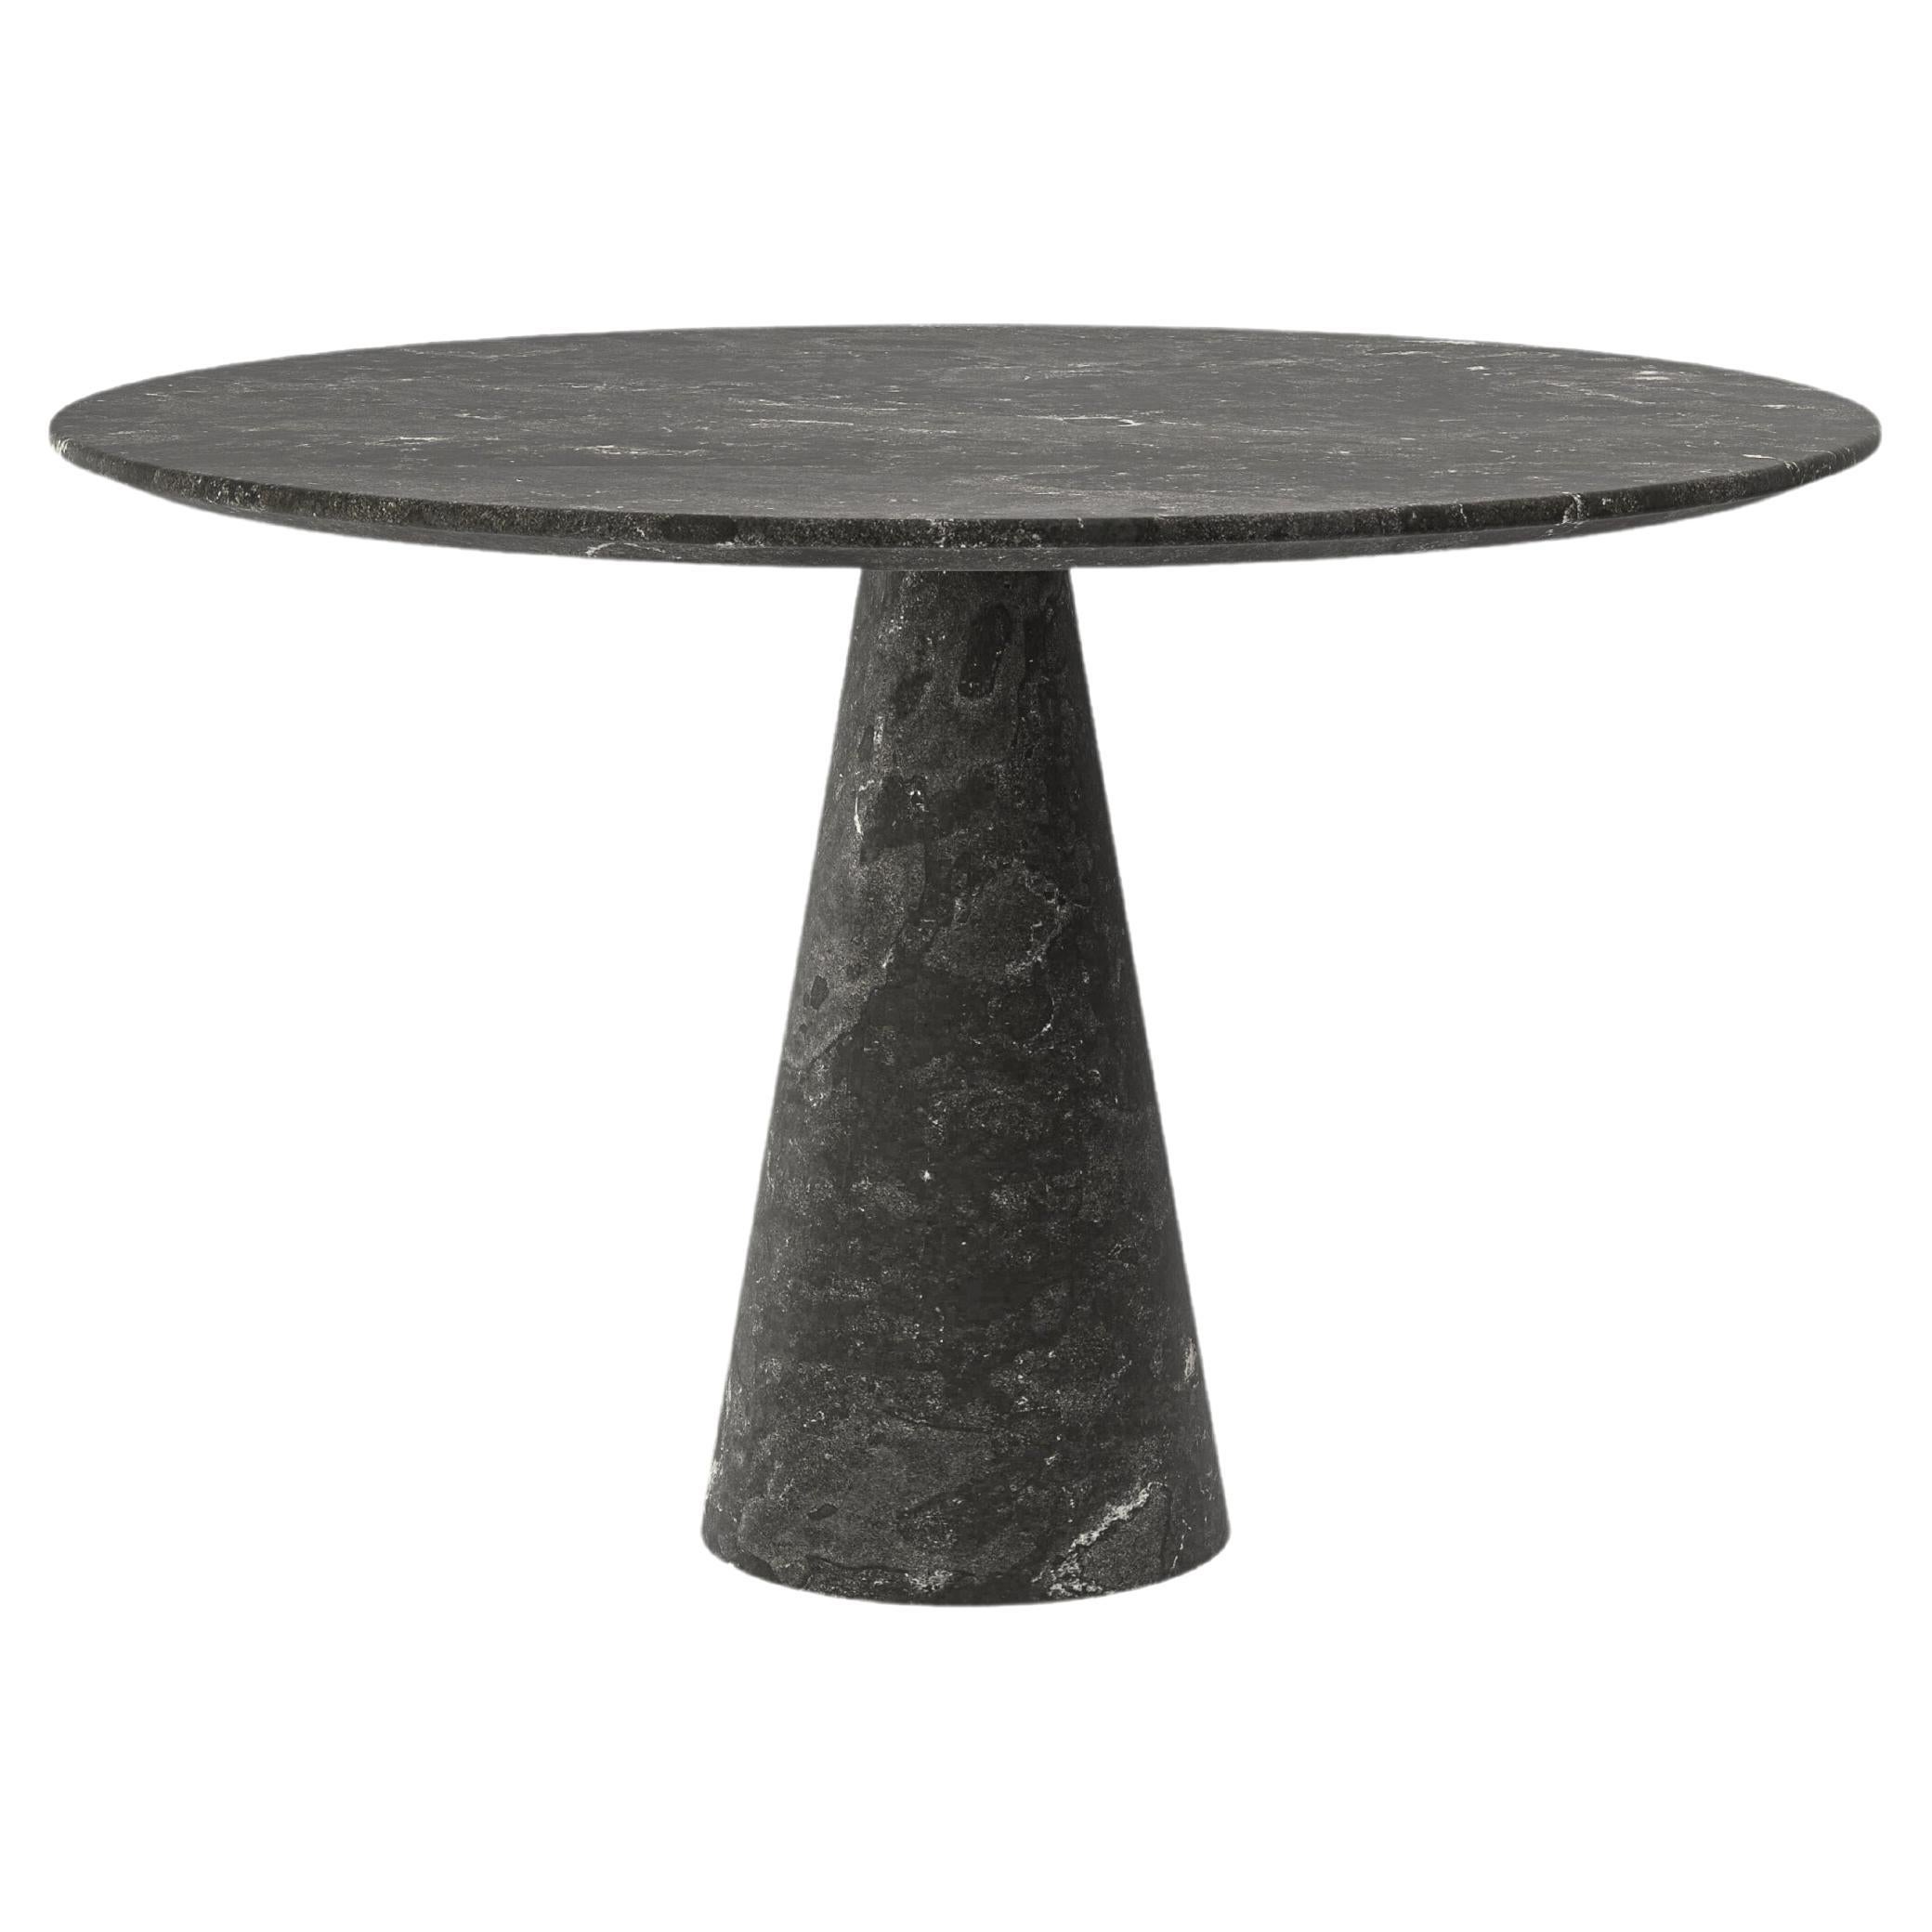 FORM(LA) Cono Table de salle à manger ronde 48L x 48L x 30H Nero Petite Granite